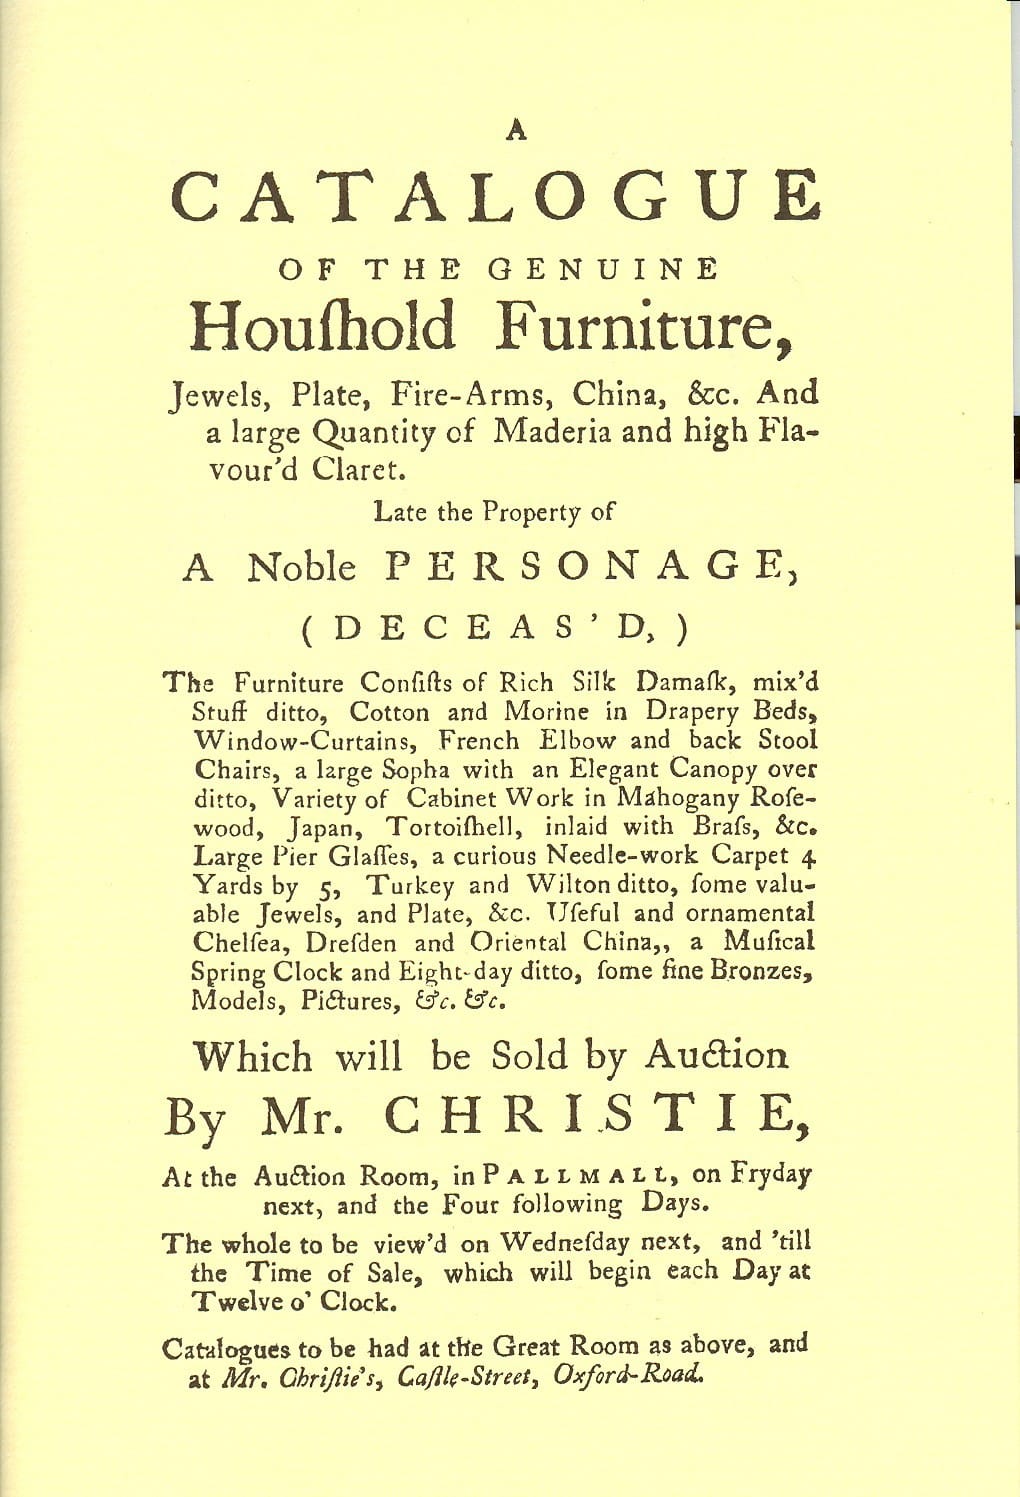 Die Anfänge des Hauses Mitte des 18. Jahrhunderts waren bescheiden. Hier ist eine Seite aus dem Auktionskatalog der allerersten Versteigerung am 5. Dezember 1766 zu sehen. Damals wurden sogar noch Schweine versteigert.